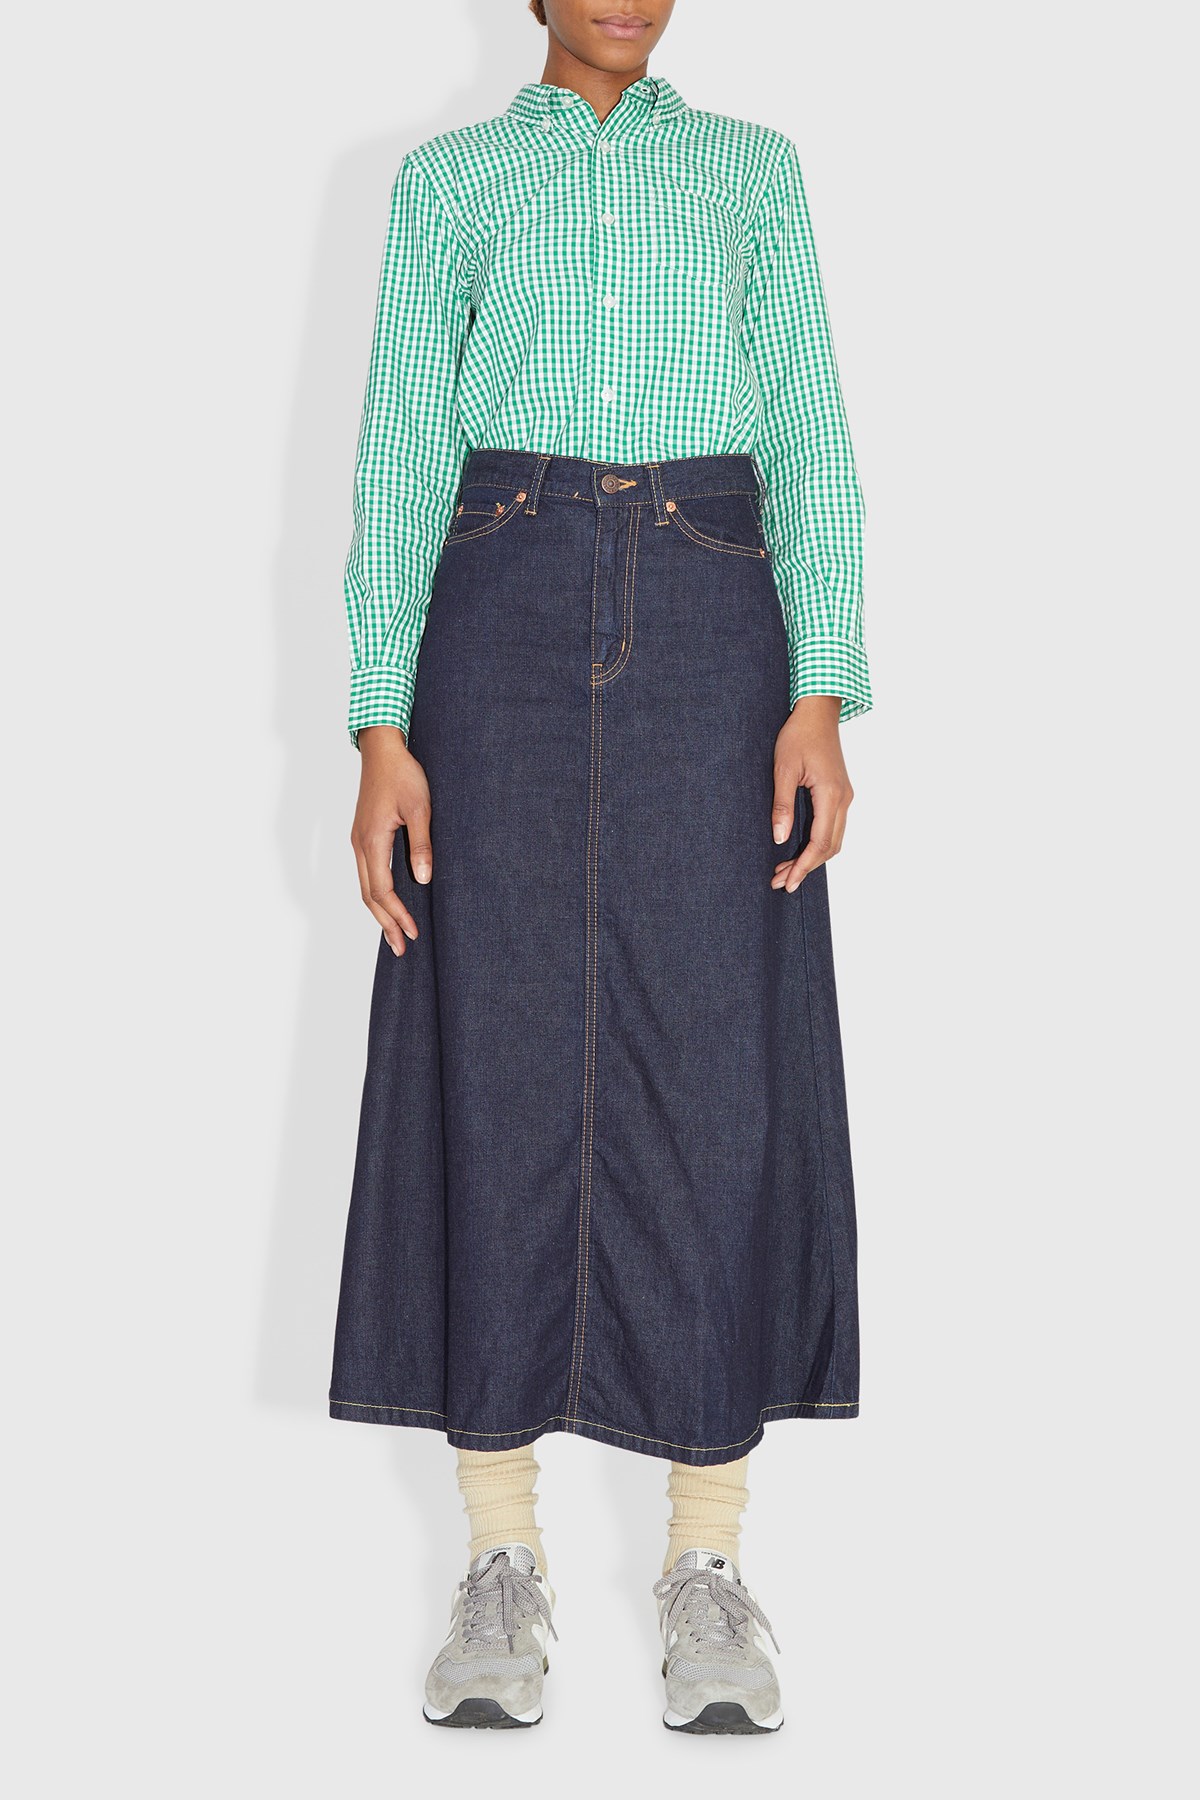 BEAMSBOY O. Pocket Denim Skirt Blue indigo | WoodWood.com